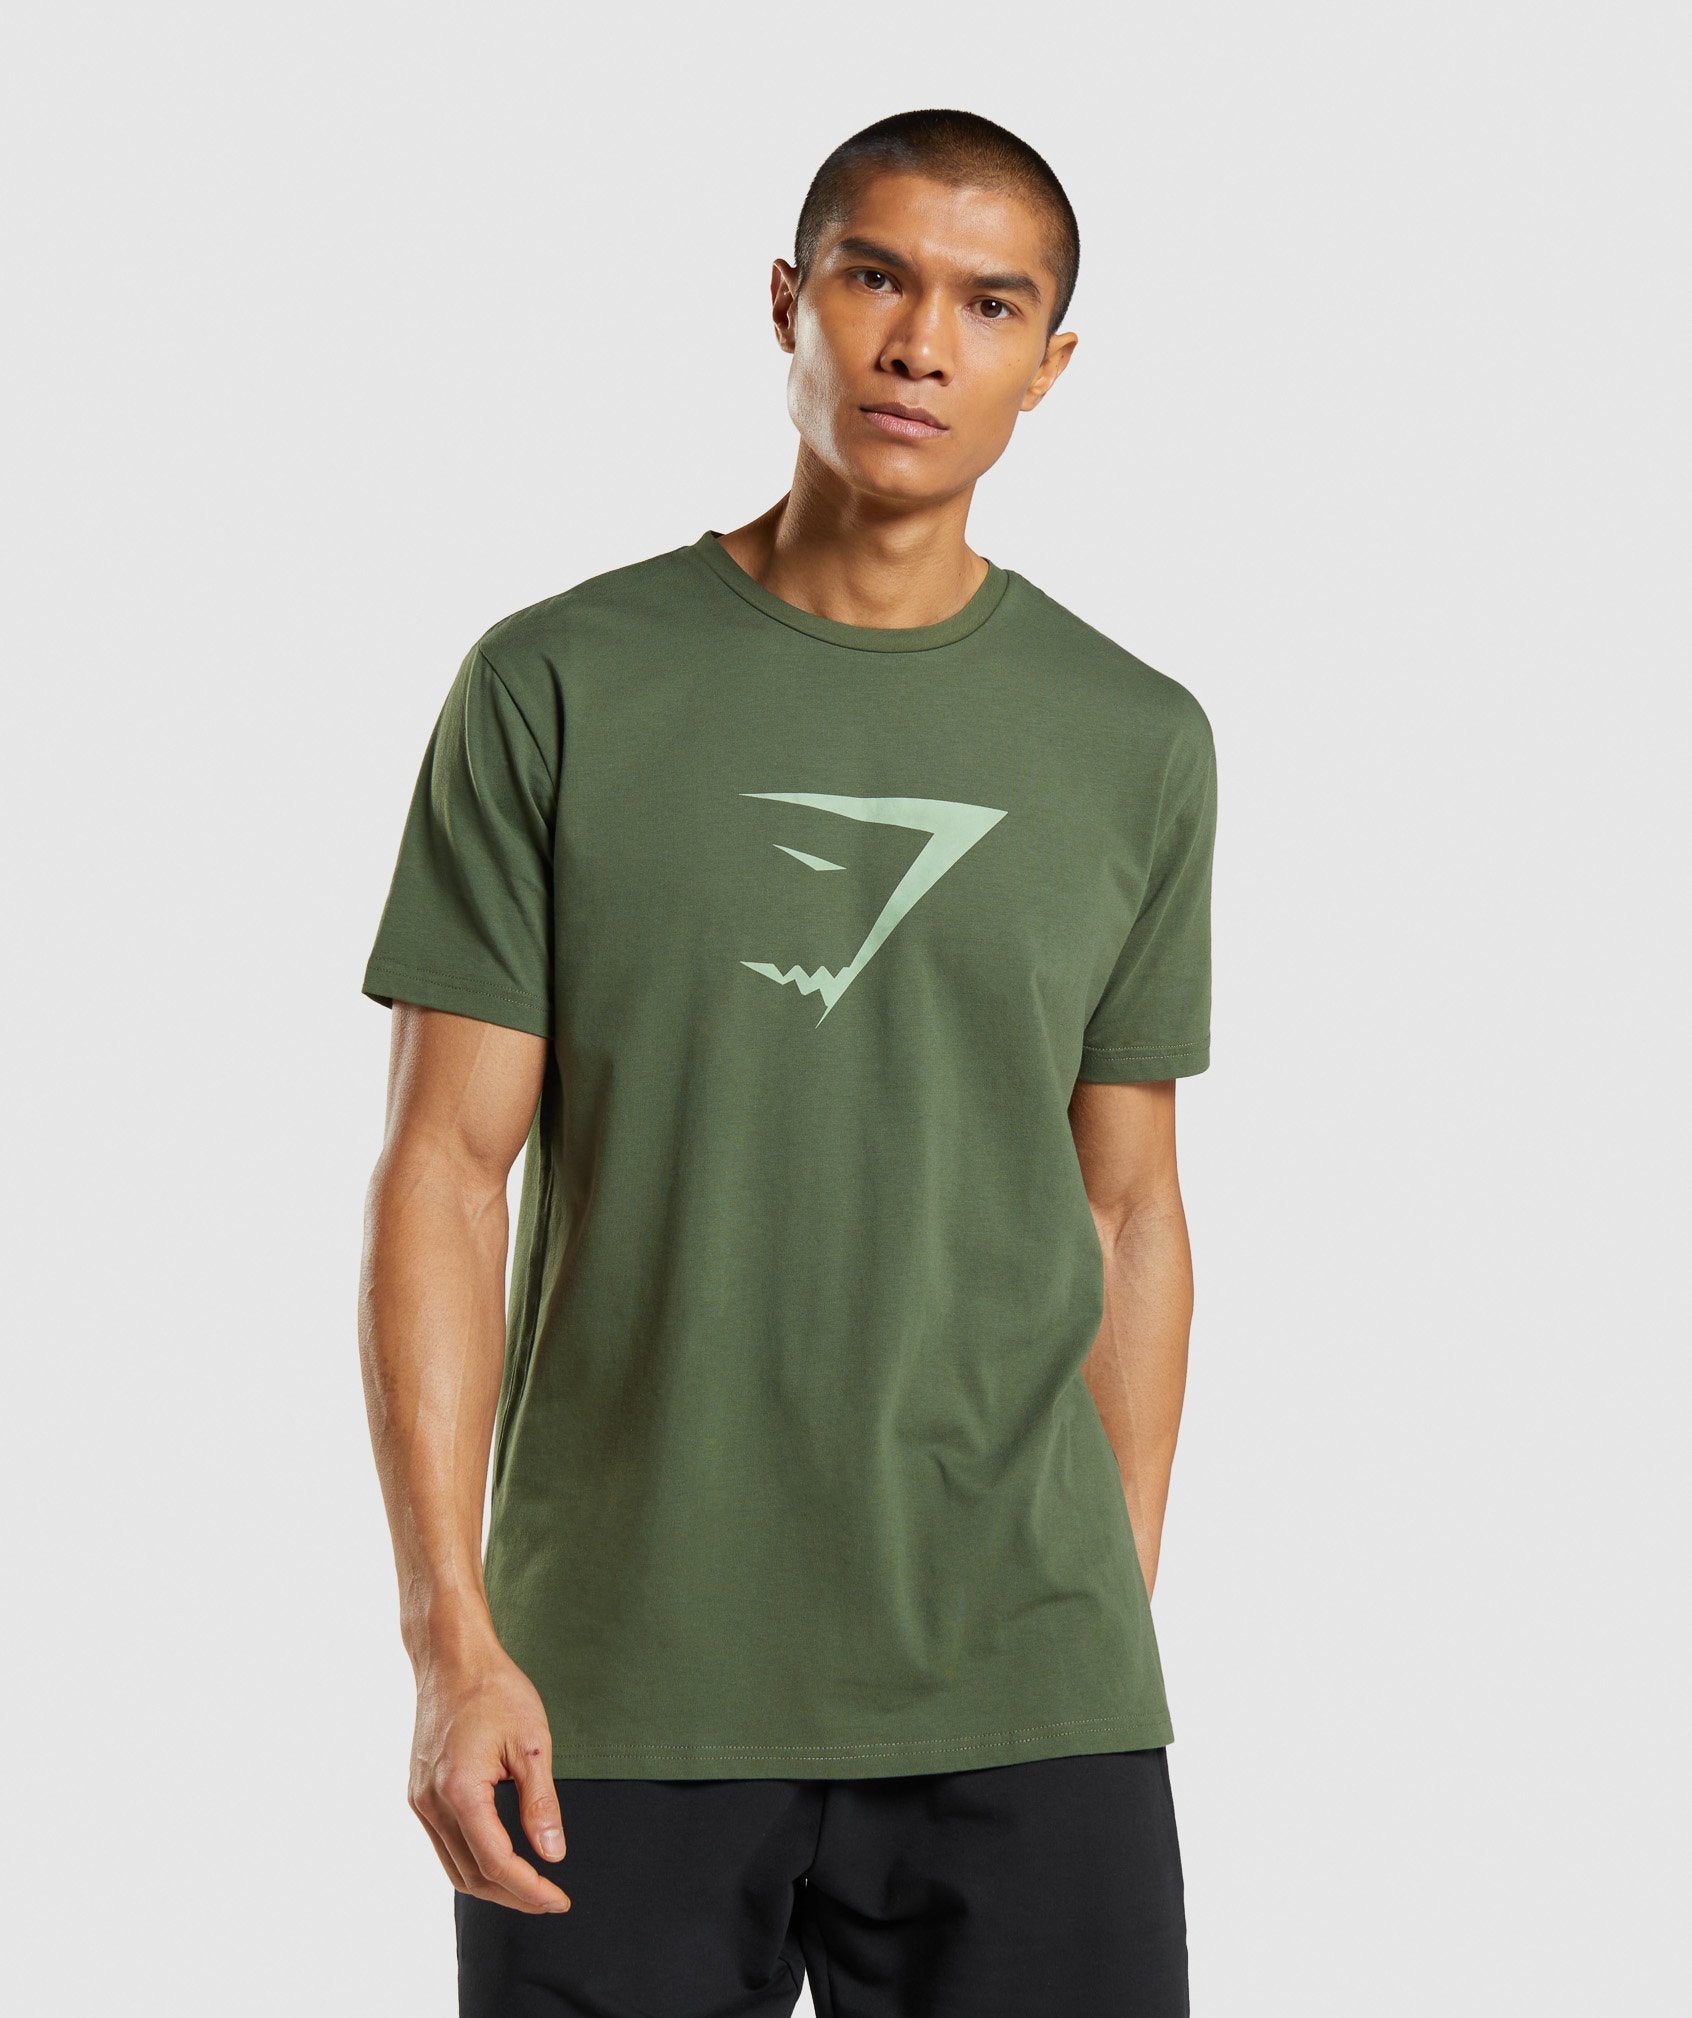 Sharkhead Infill T-Shirt in Green